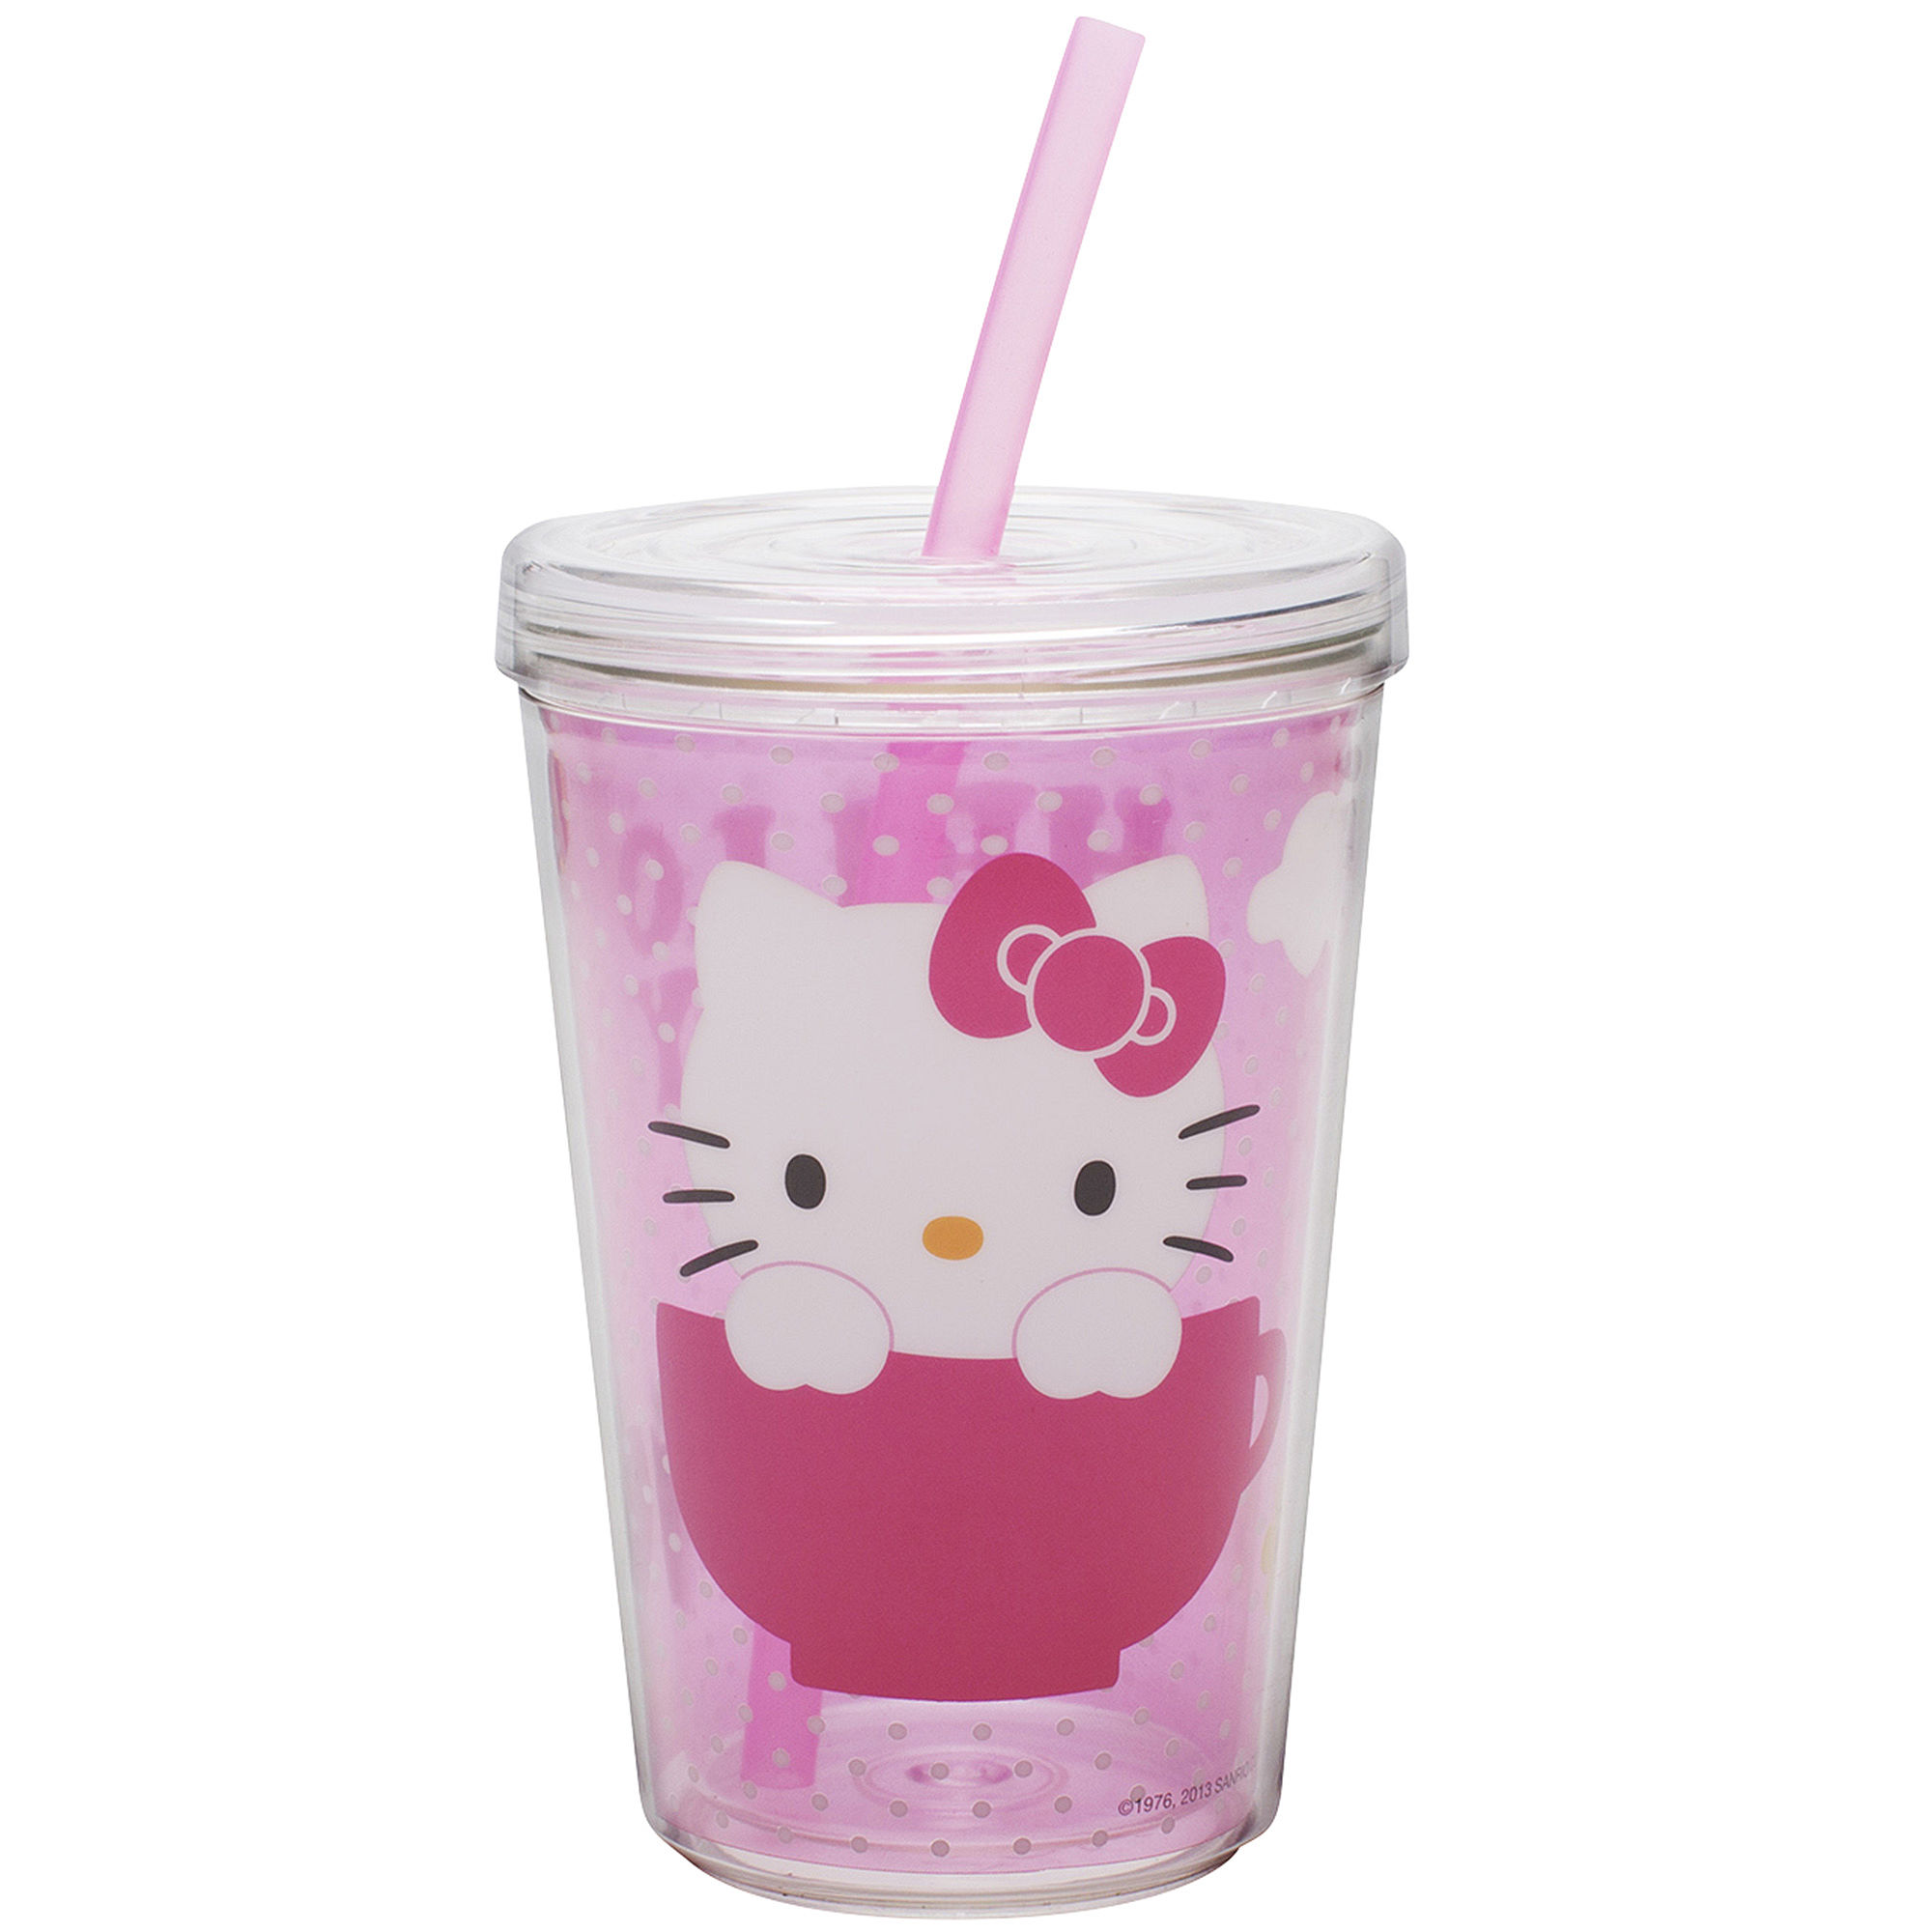 Zak Designs Hello Kitty 13-oz. Tumbler with Straw